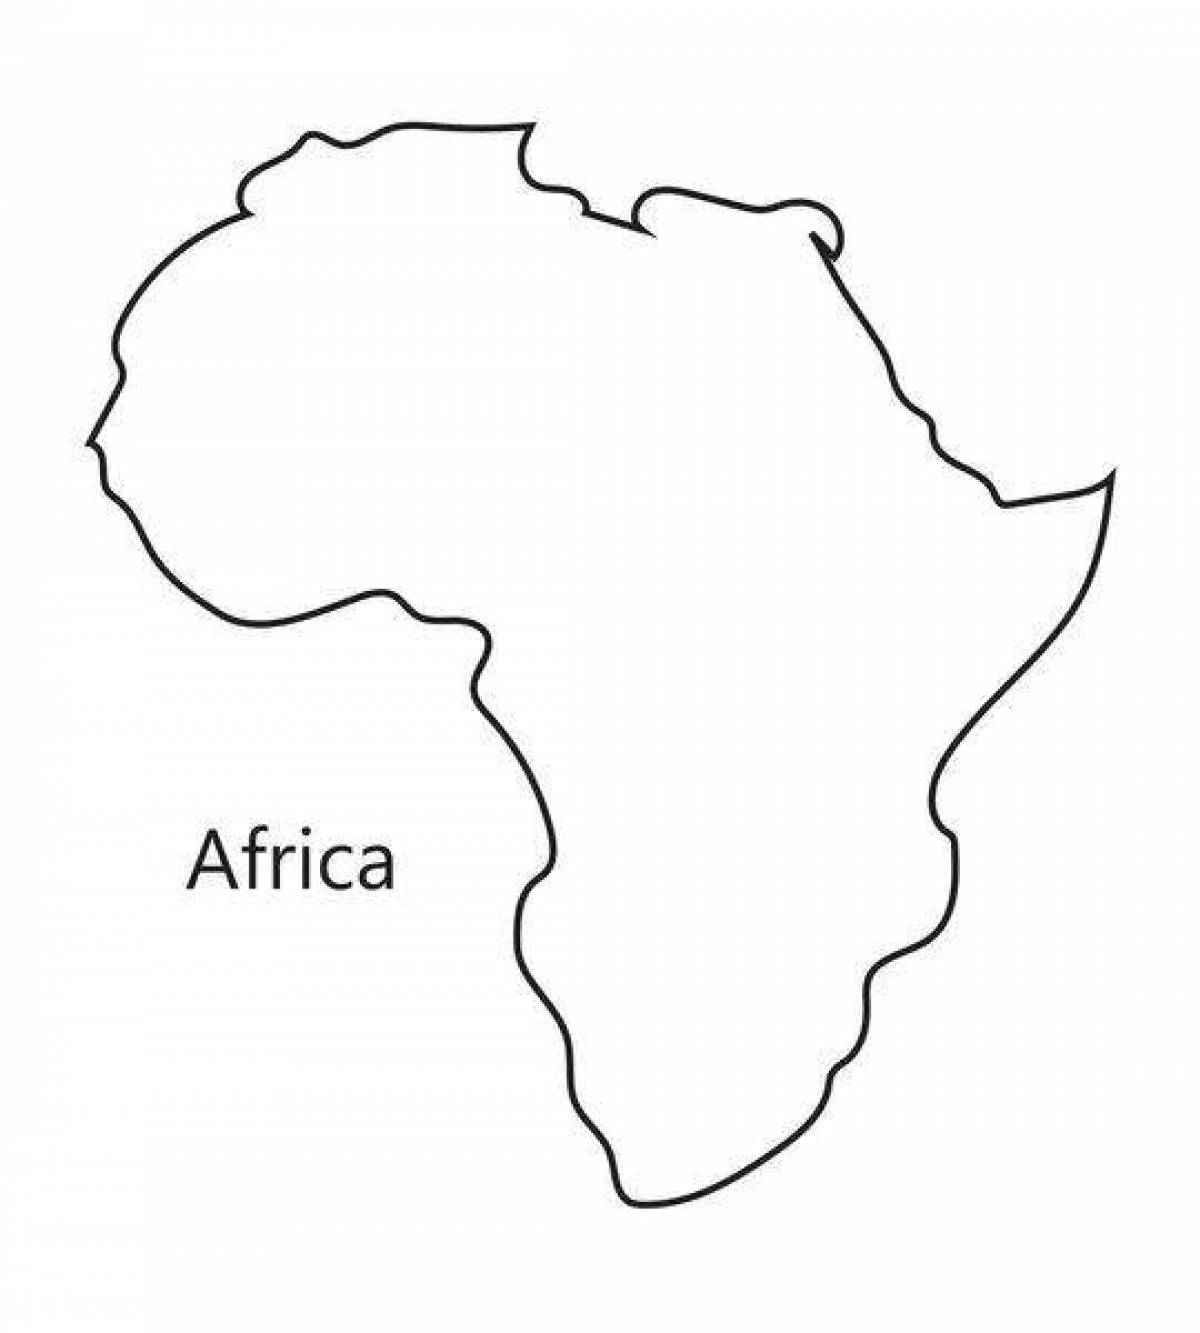 Раскраска удивительная карта африки